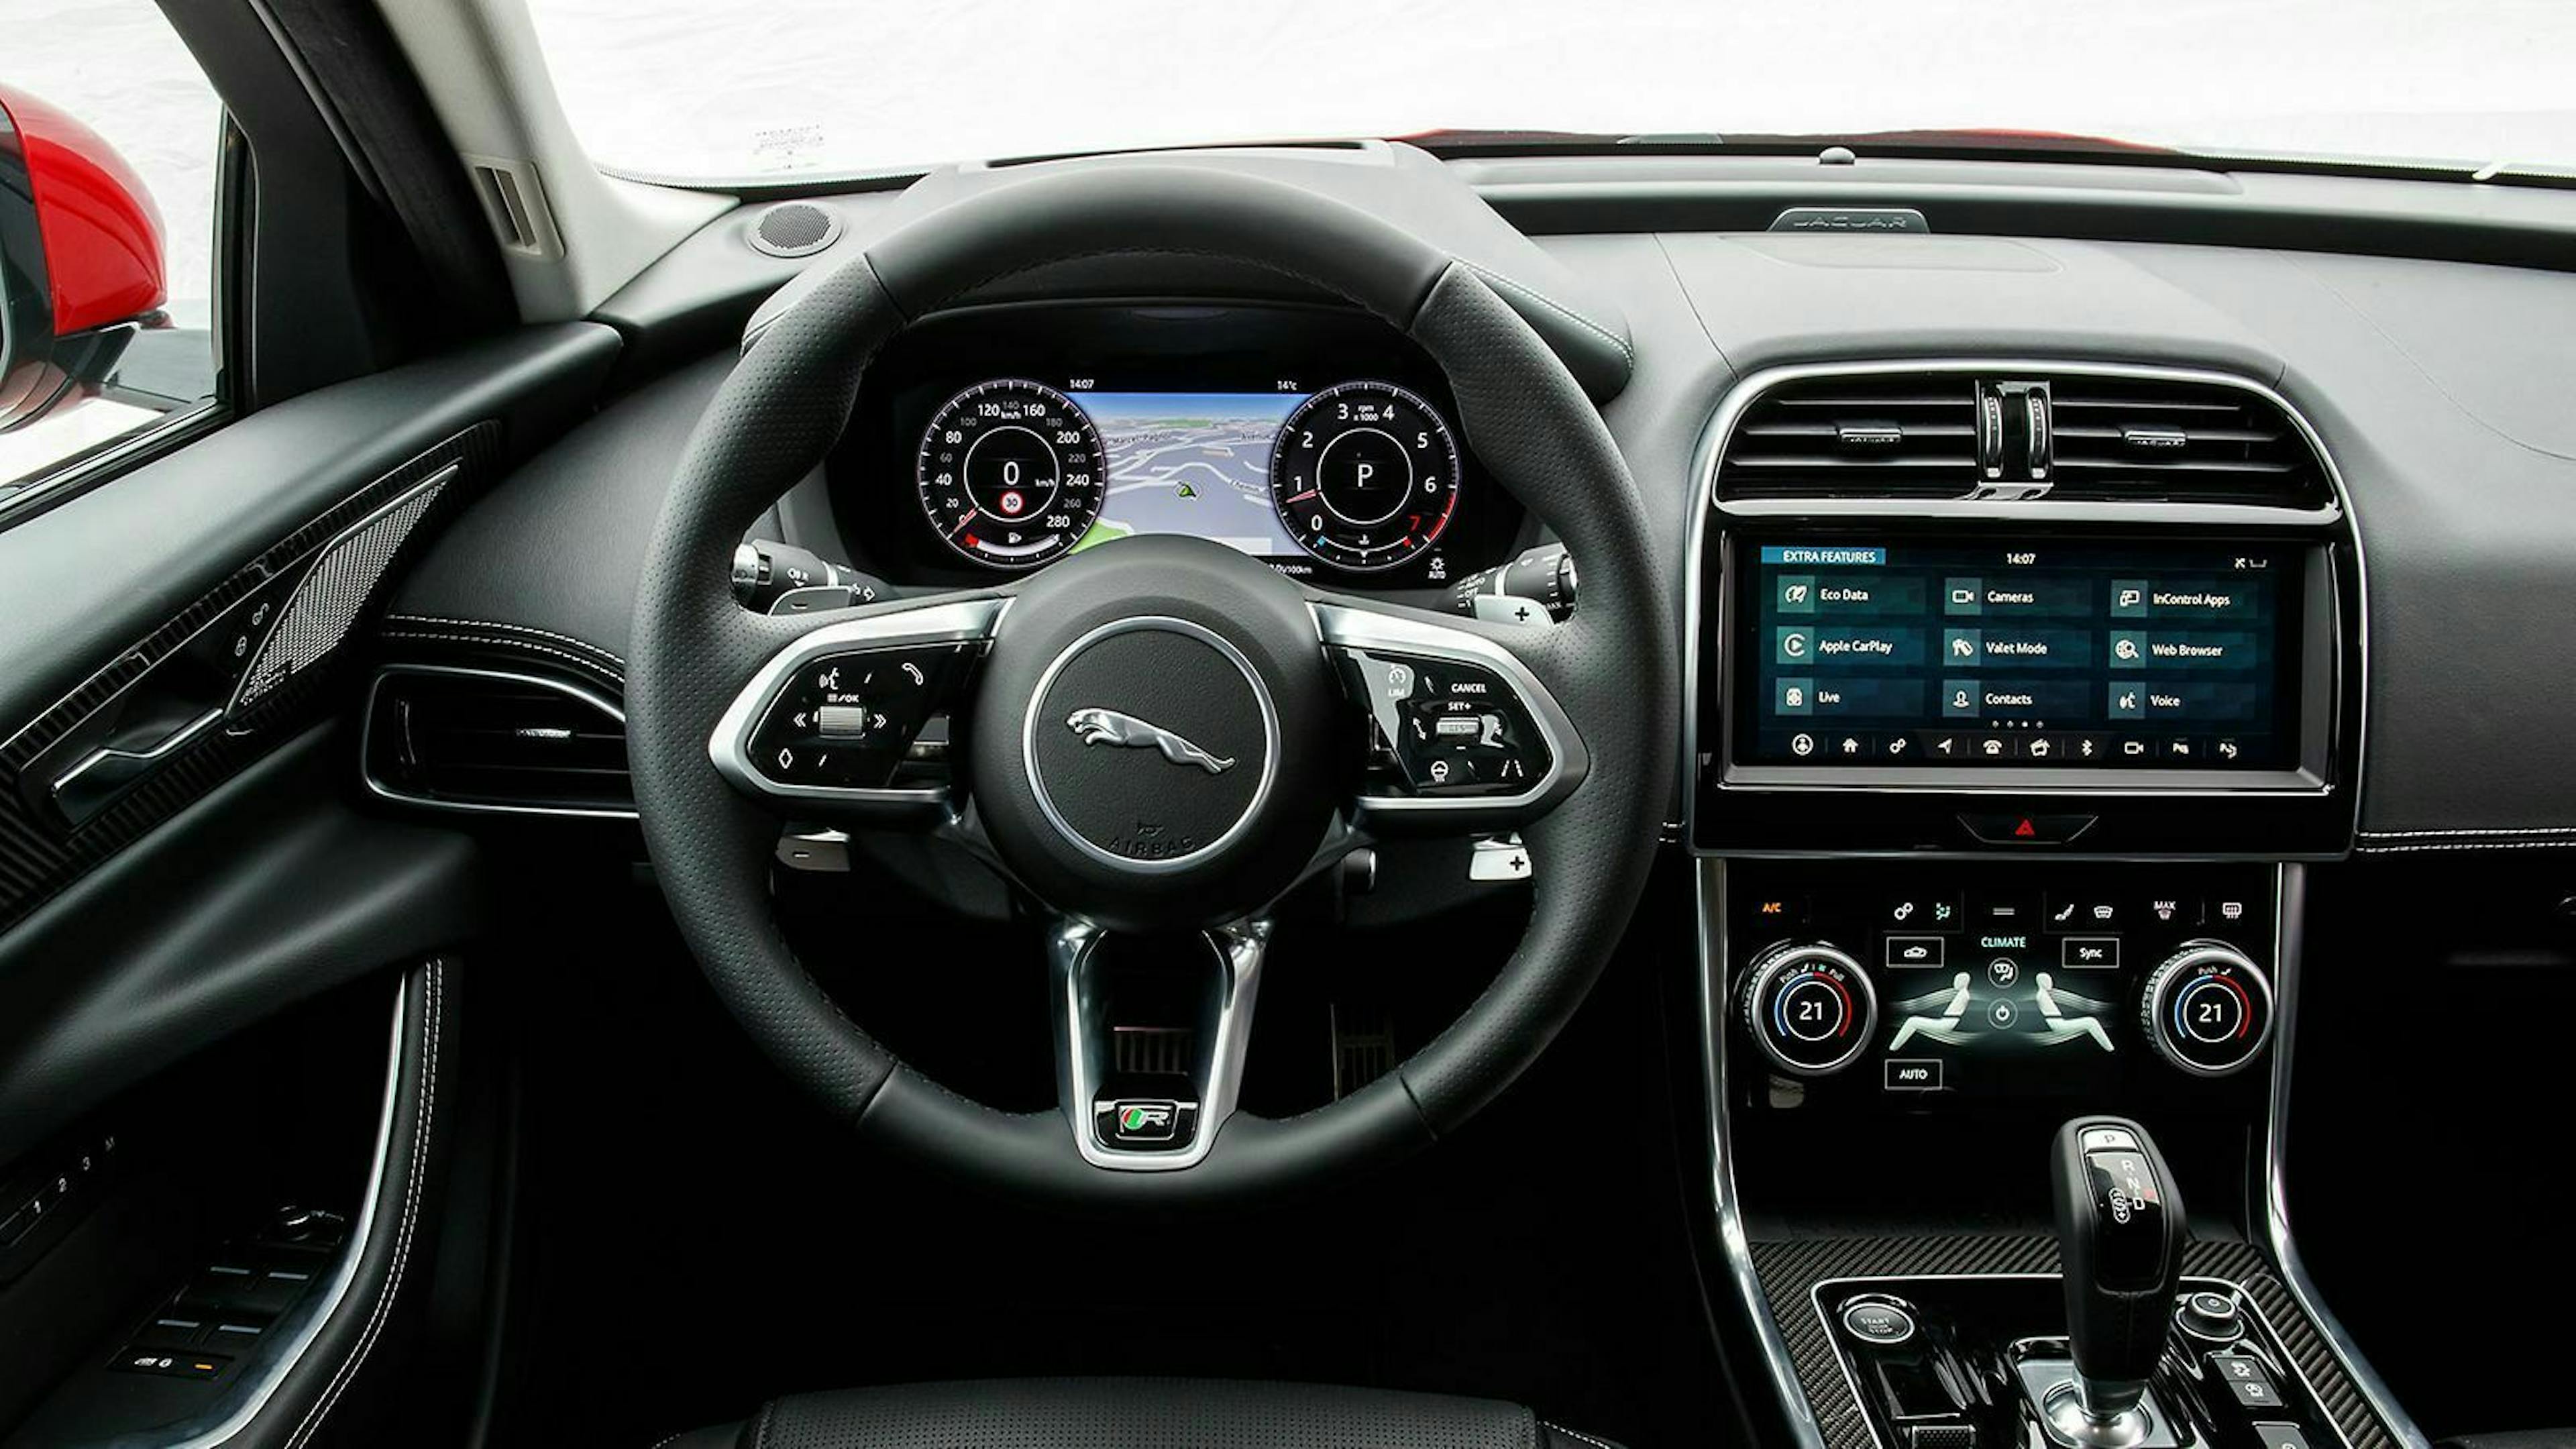 Das Infotainmentsystem übernimmt die britische Limousine Jaguar XE aus dem I-Pace